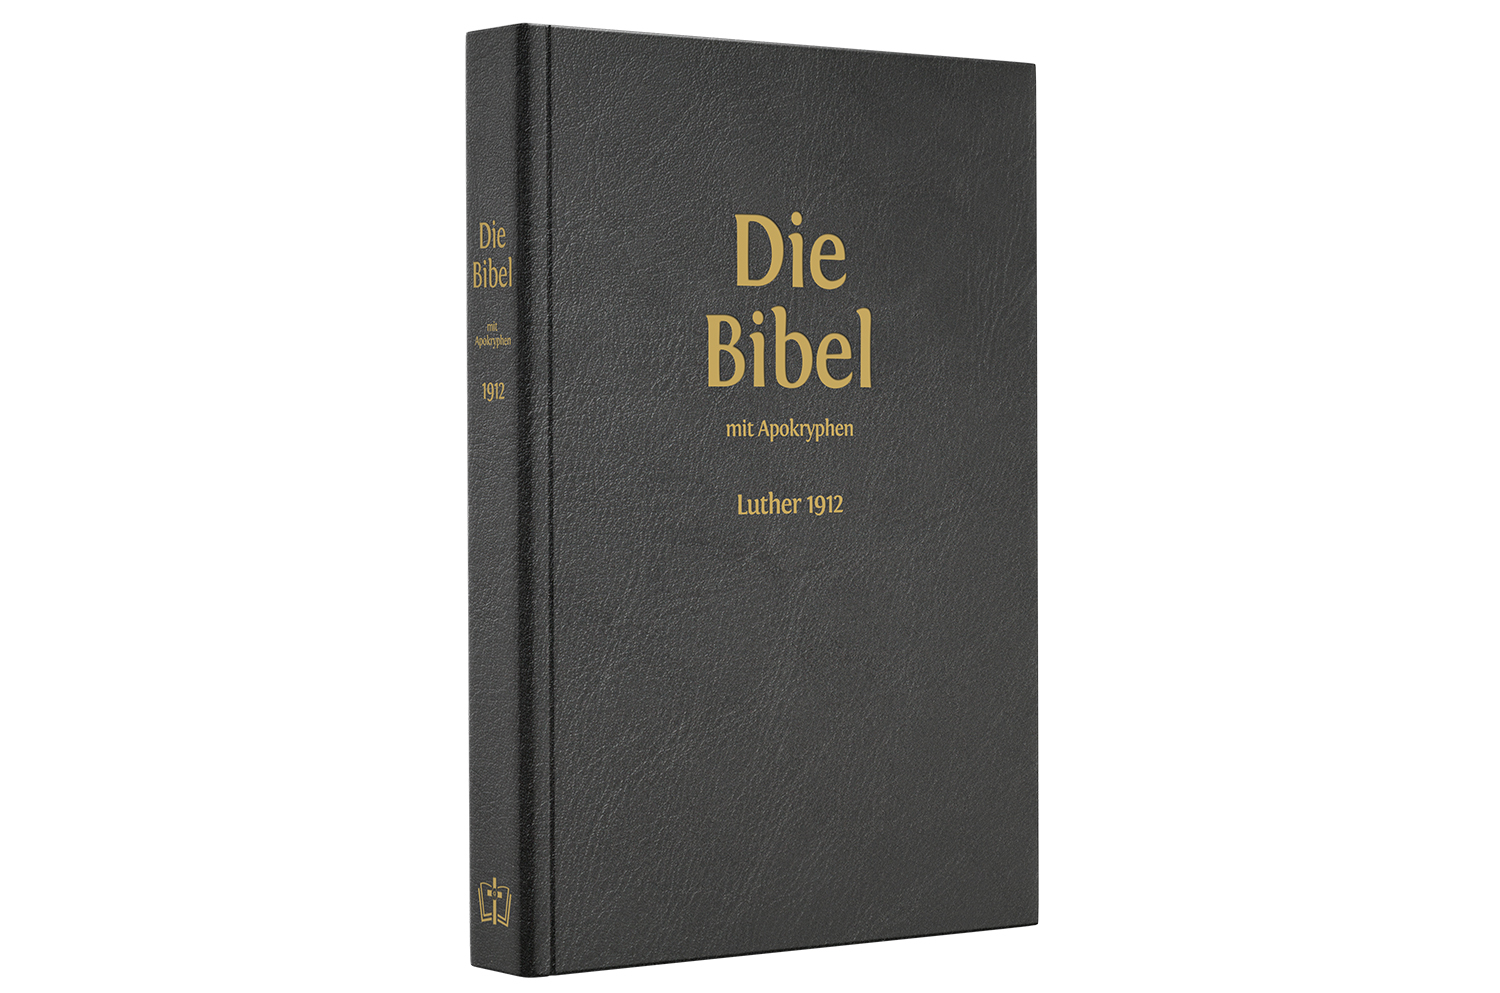 Die Bibel Luther 1912  mit Apokryphen - Lederausgabe, Reißverschluss